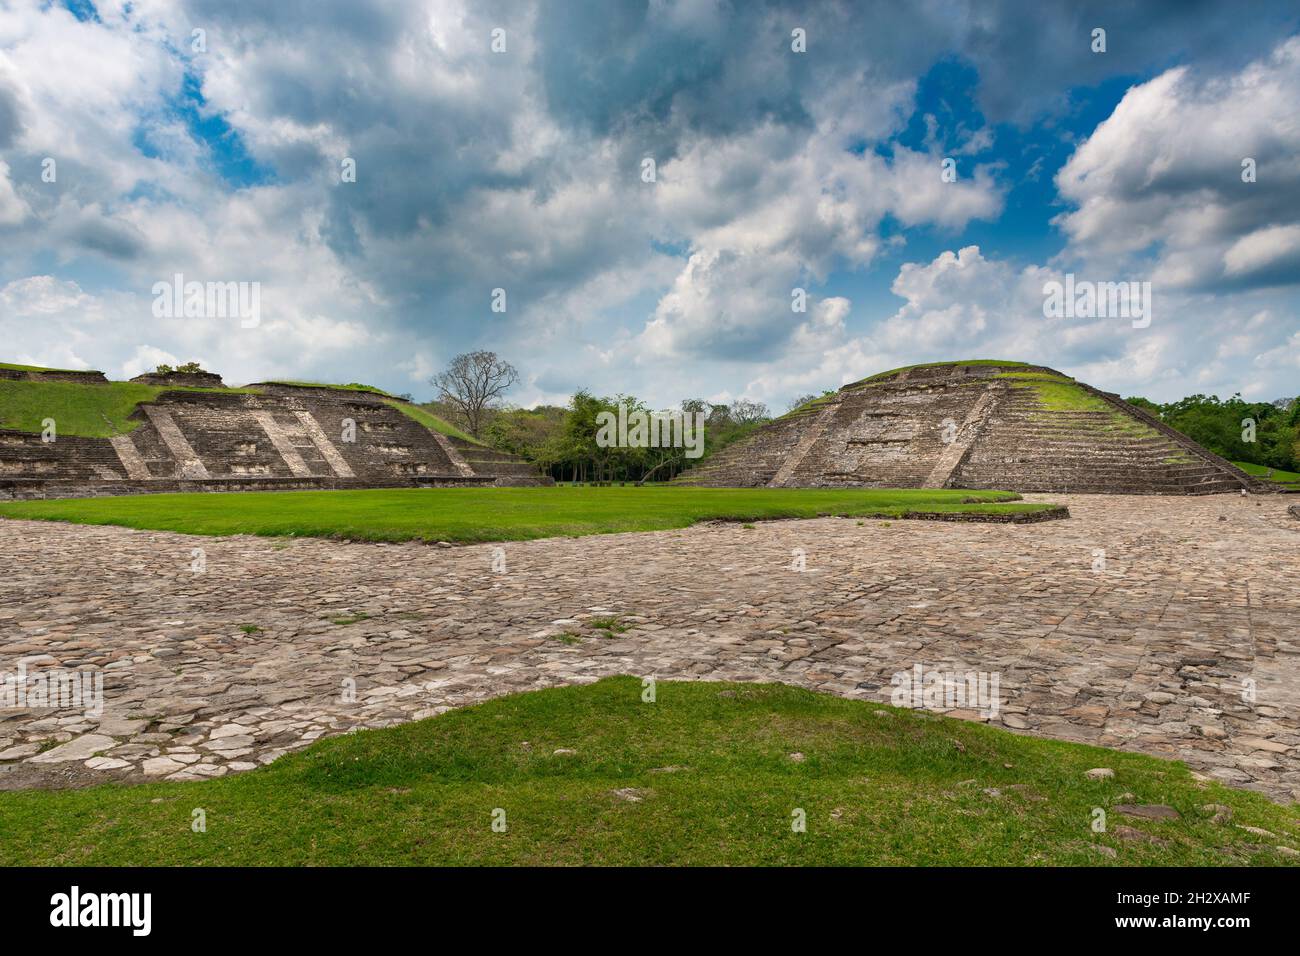 Vista de una antigua pirámide en el yacimiento arqueológico DE EL Tajin, en Papantla, Veracruz, México. Foto de stock